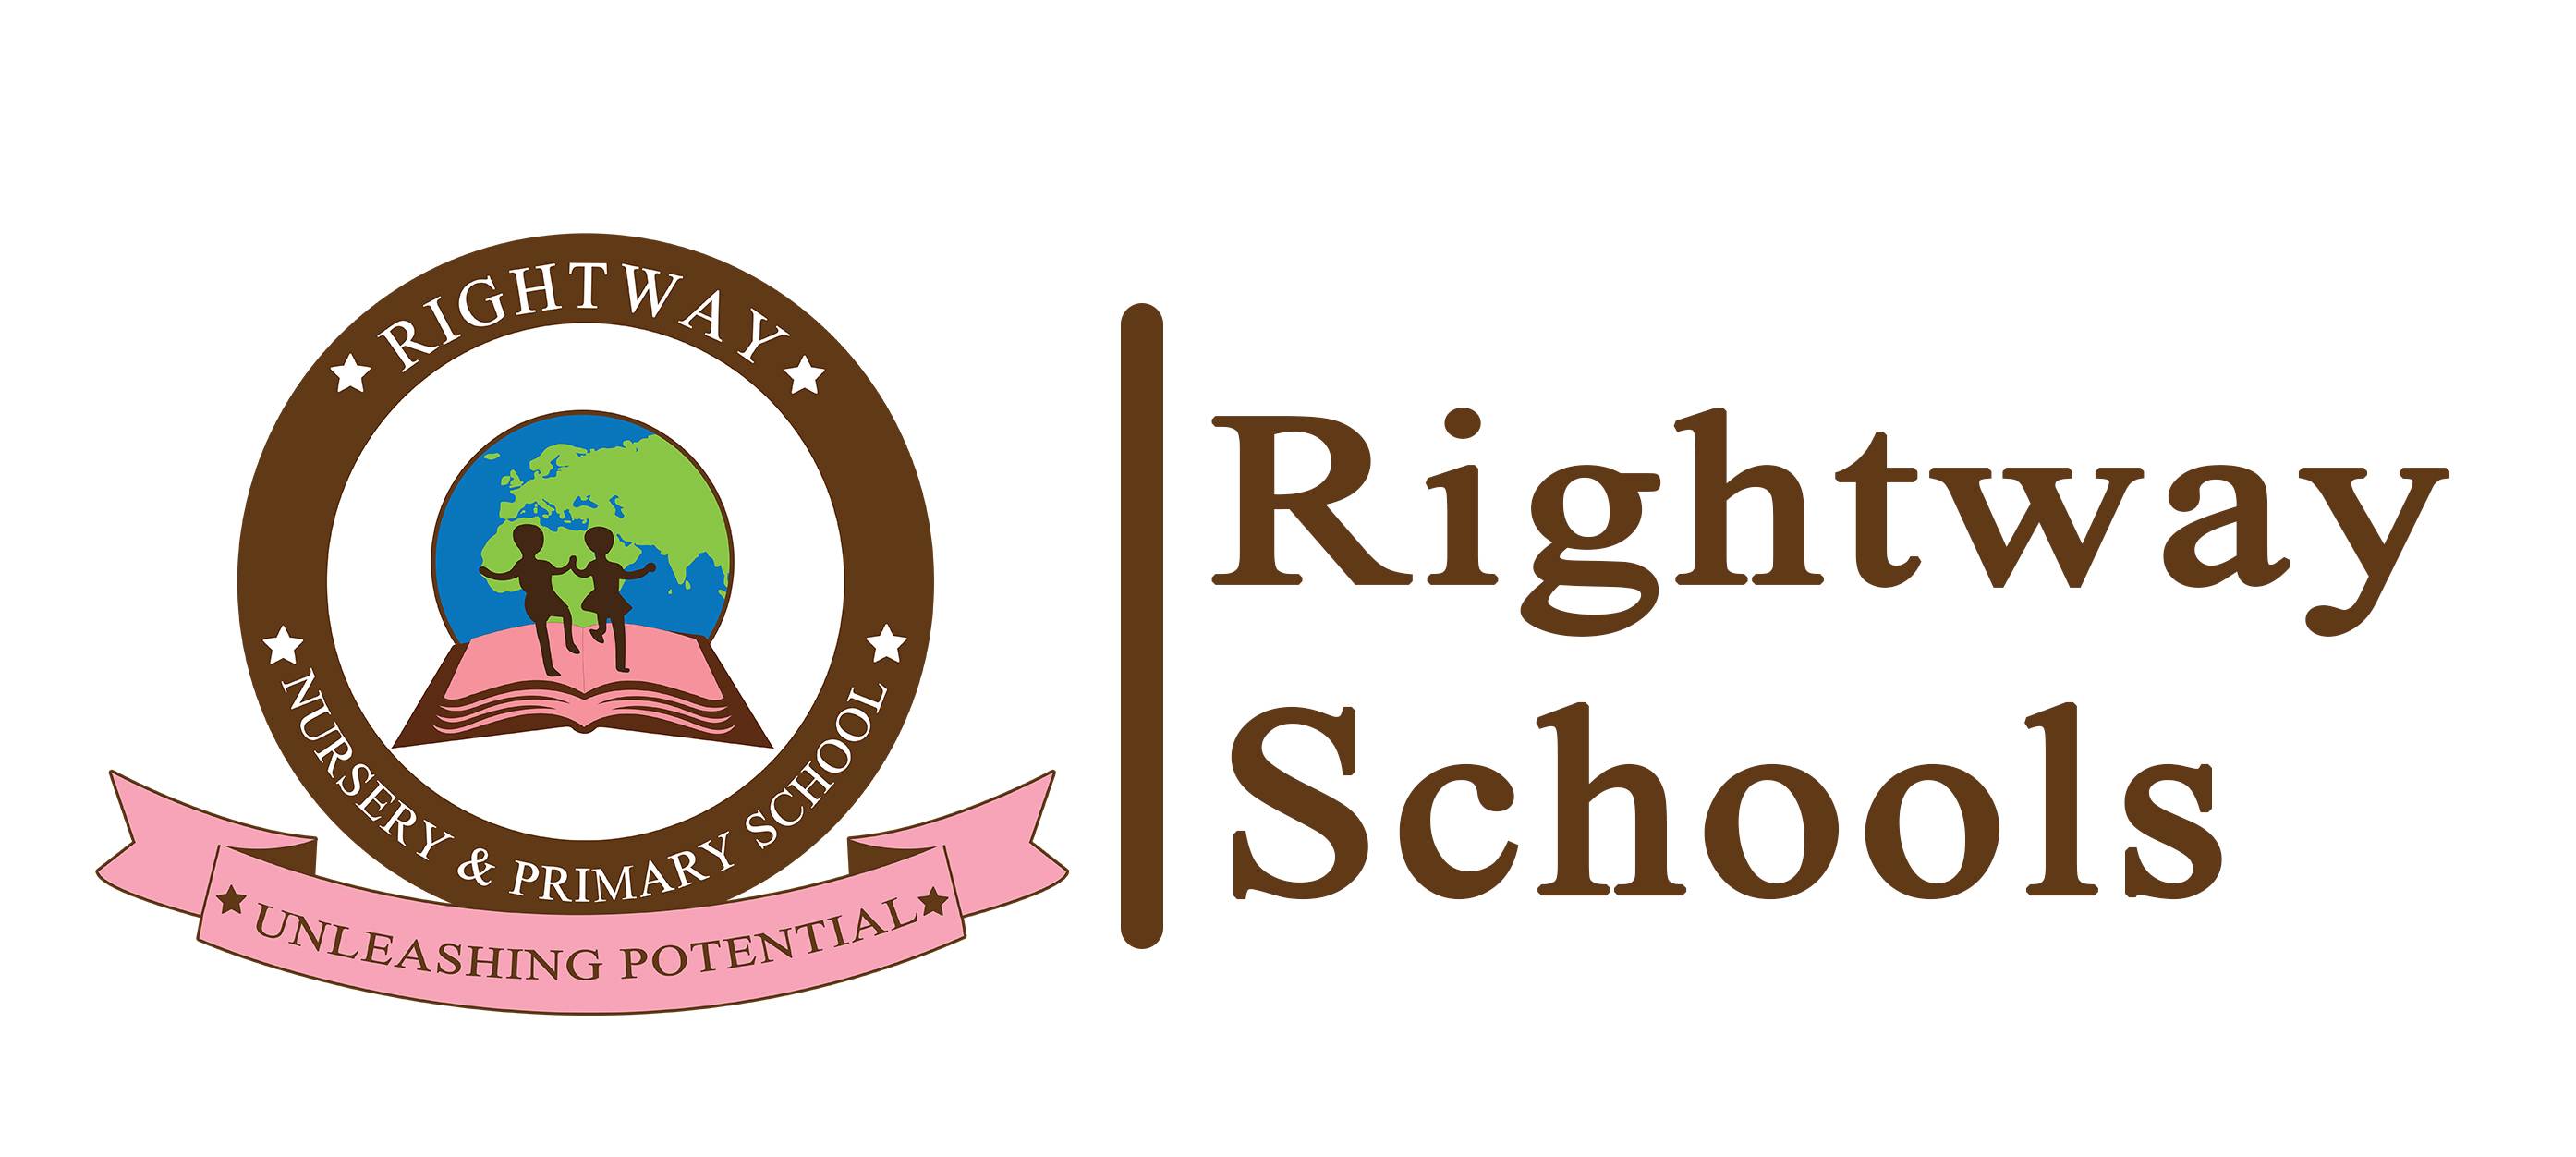 Rightwayschools